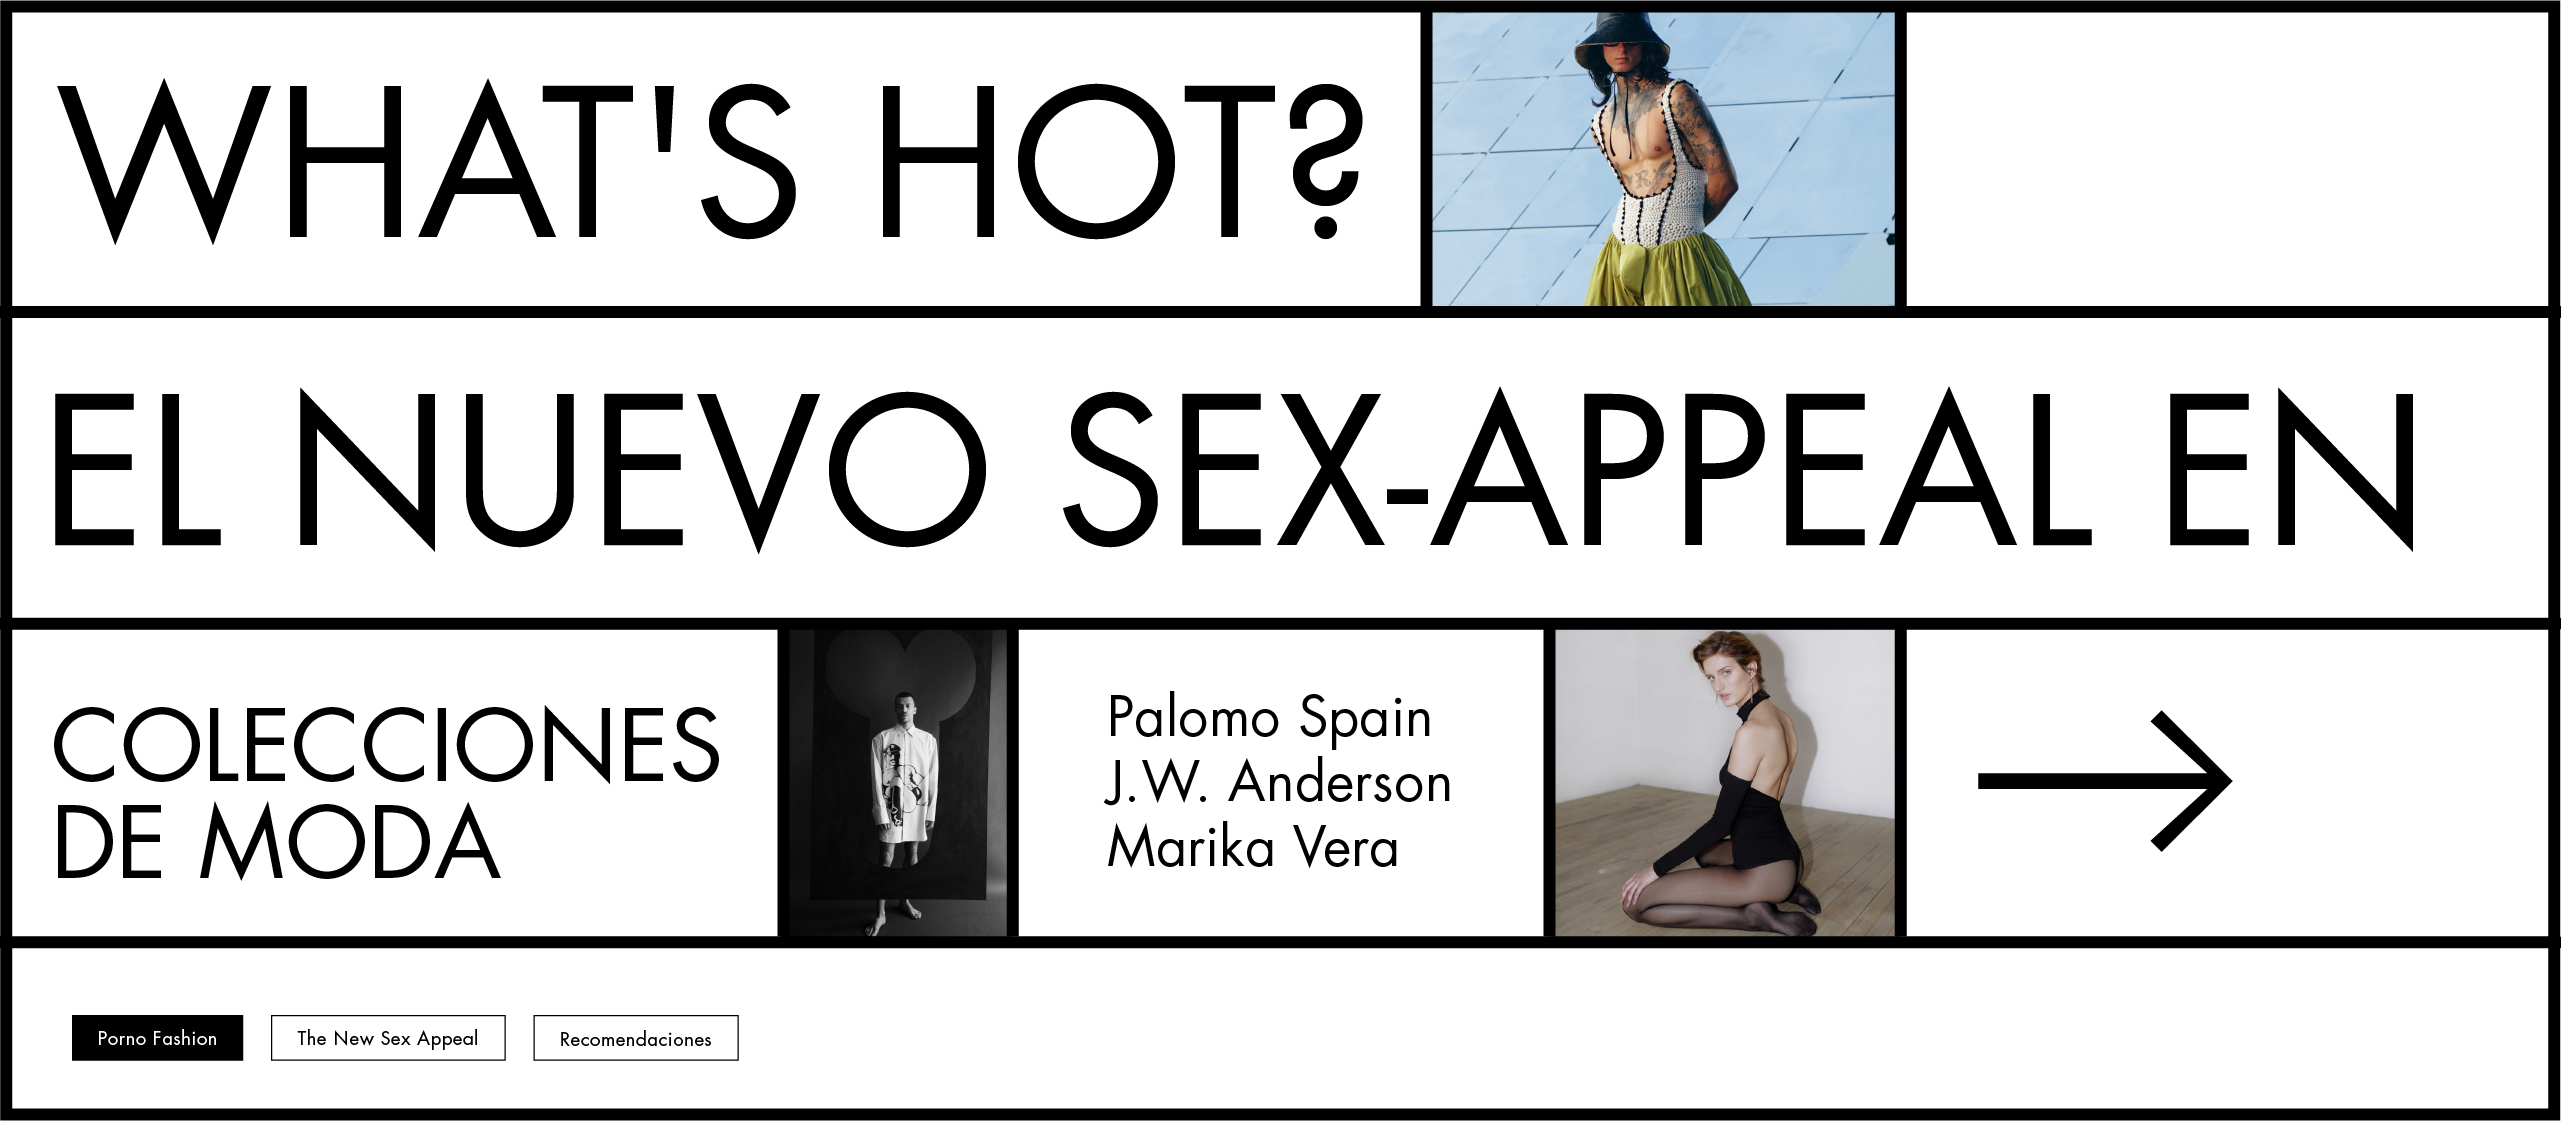 What’s hot? El nuevo sex-appeal en colecciones de moda